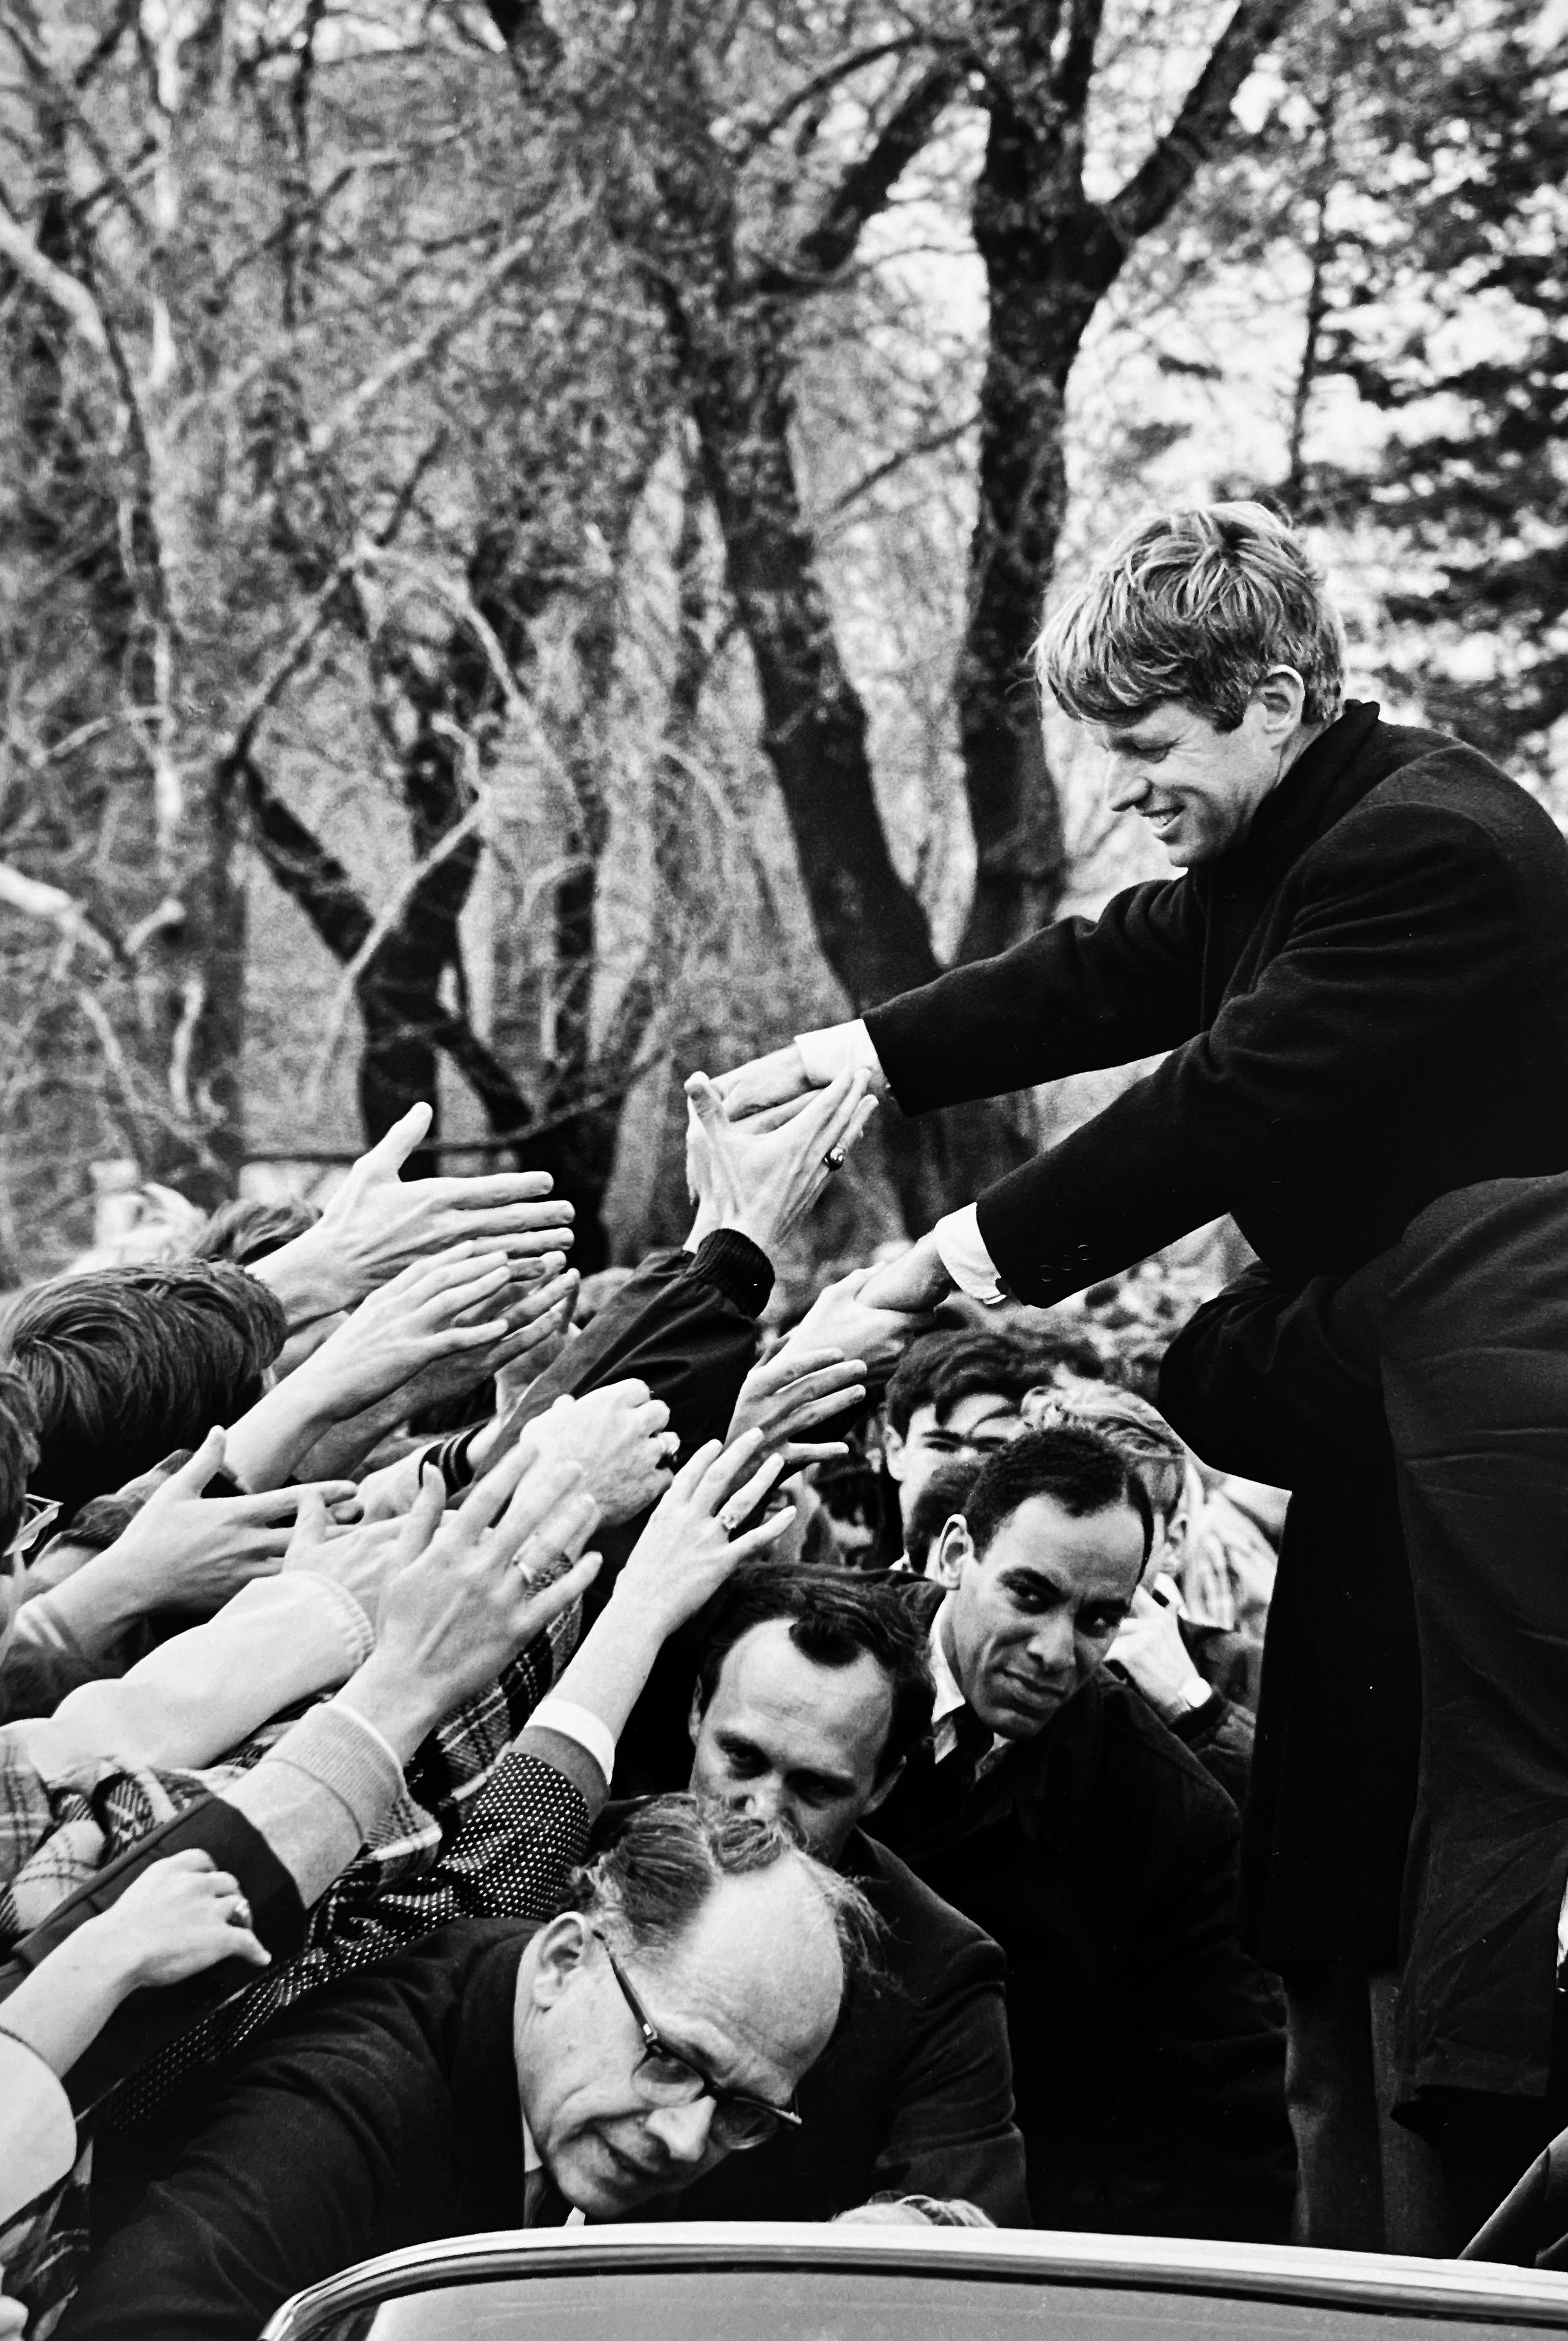 Robert Kennedy (RFK) Campaign Trail, Schwarz-Weiß-Porträtfotografie 1960s – Photograph von Burt Glinn